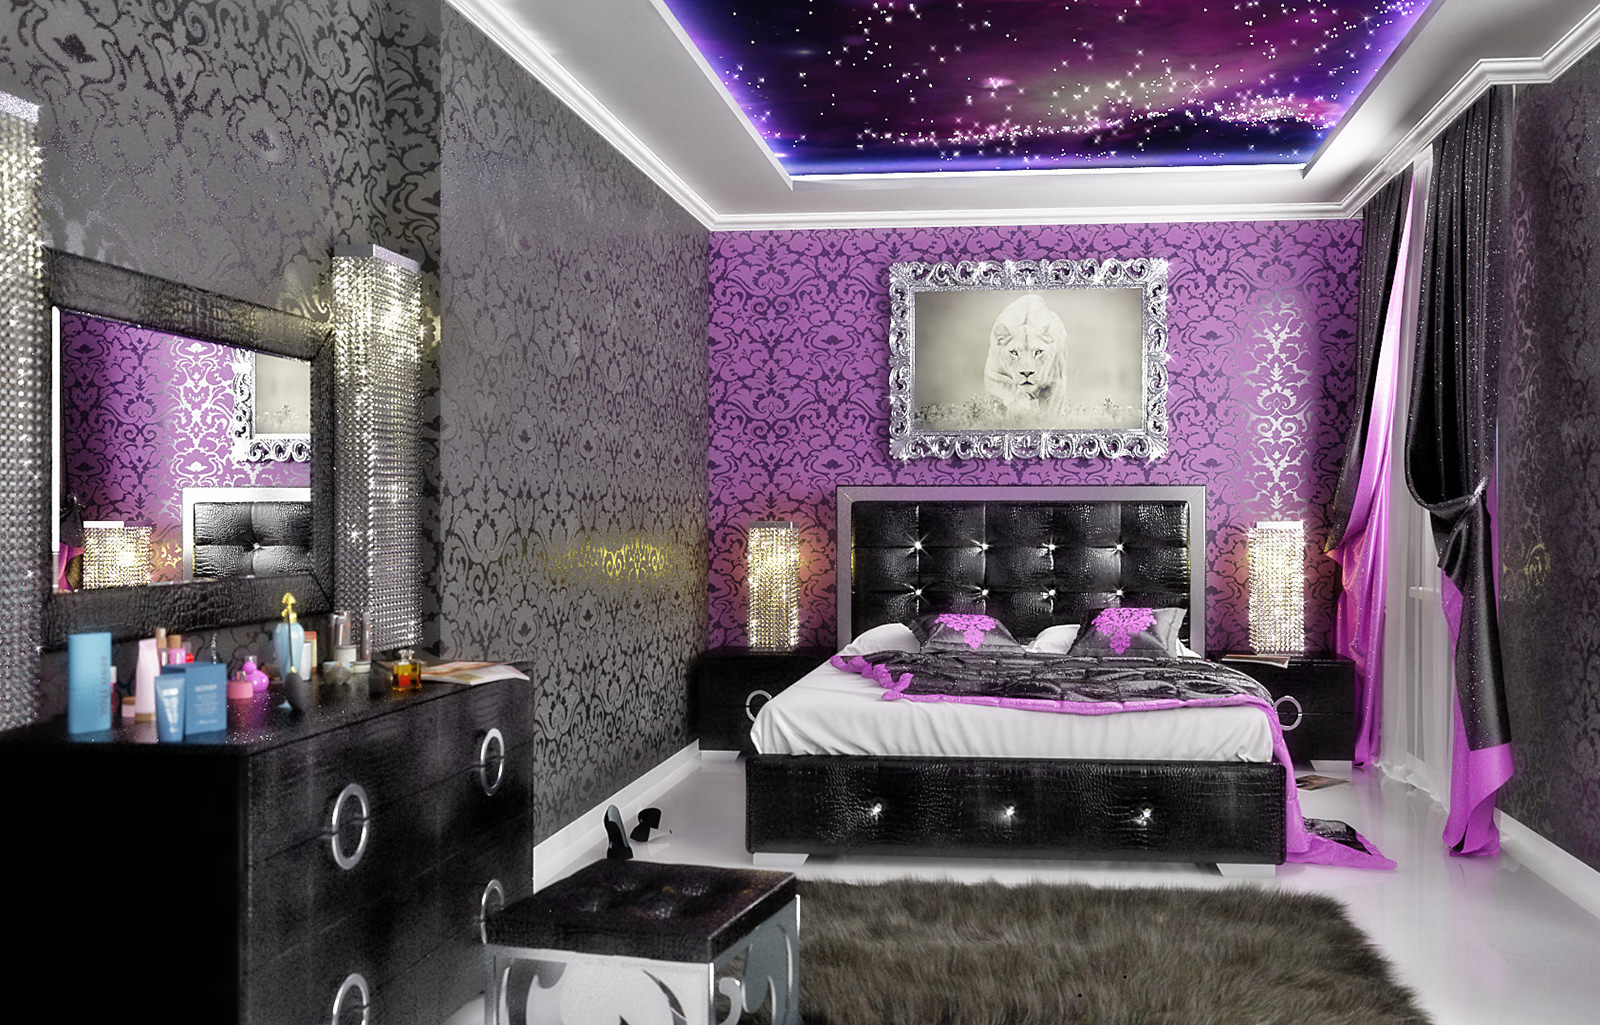 ภาพการออกแบบห้องนอนสีม่วง